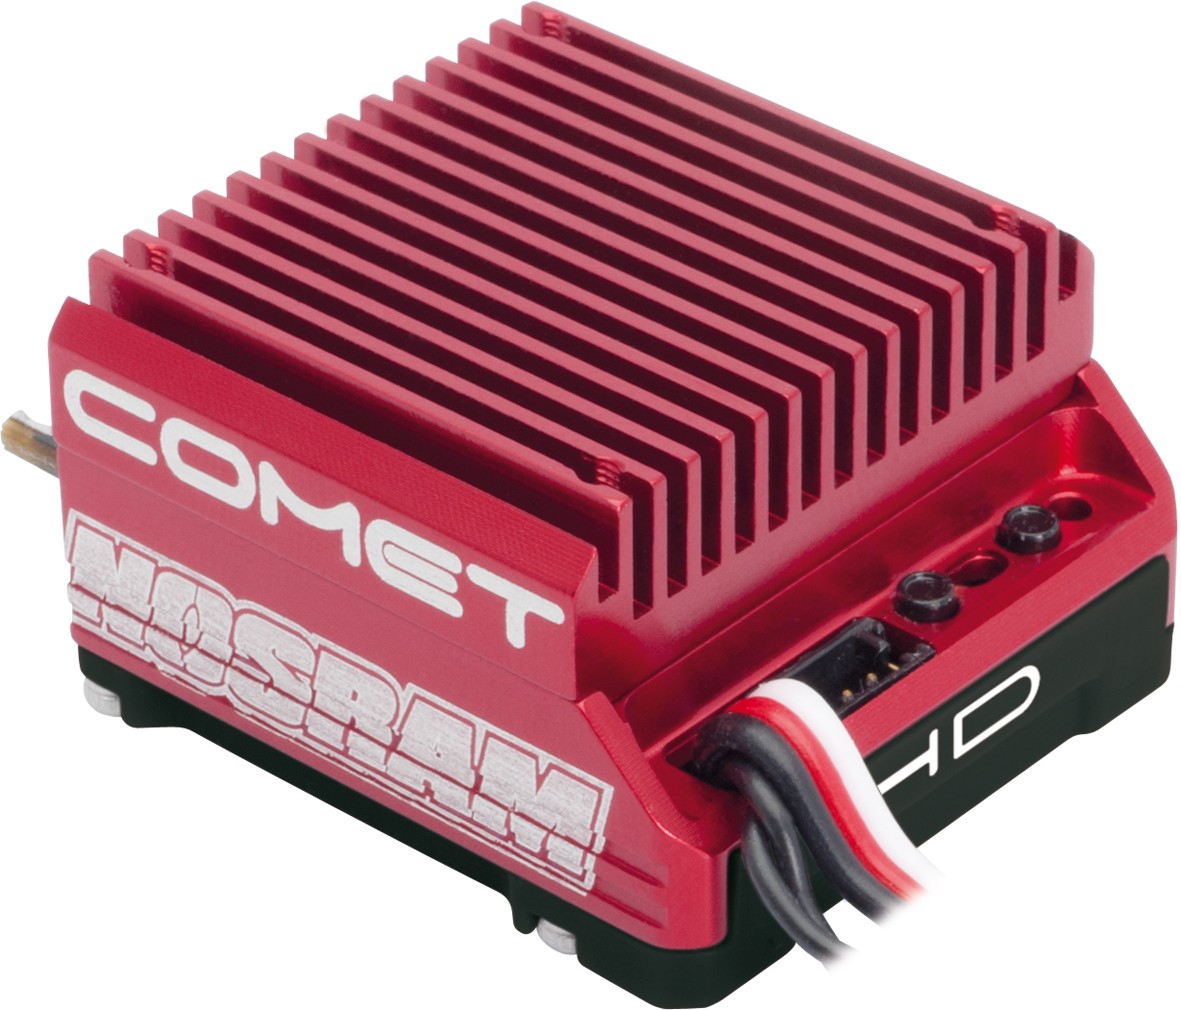 Nosram - ESC: Comet HD BL Speed-Control - 90970